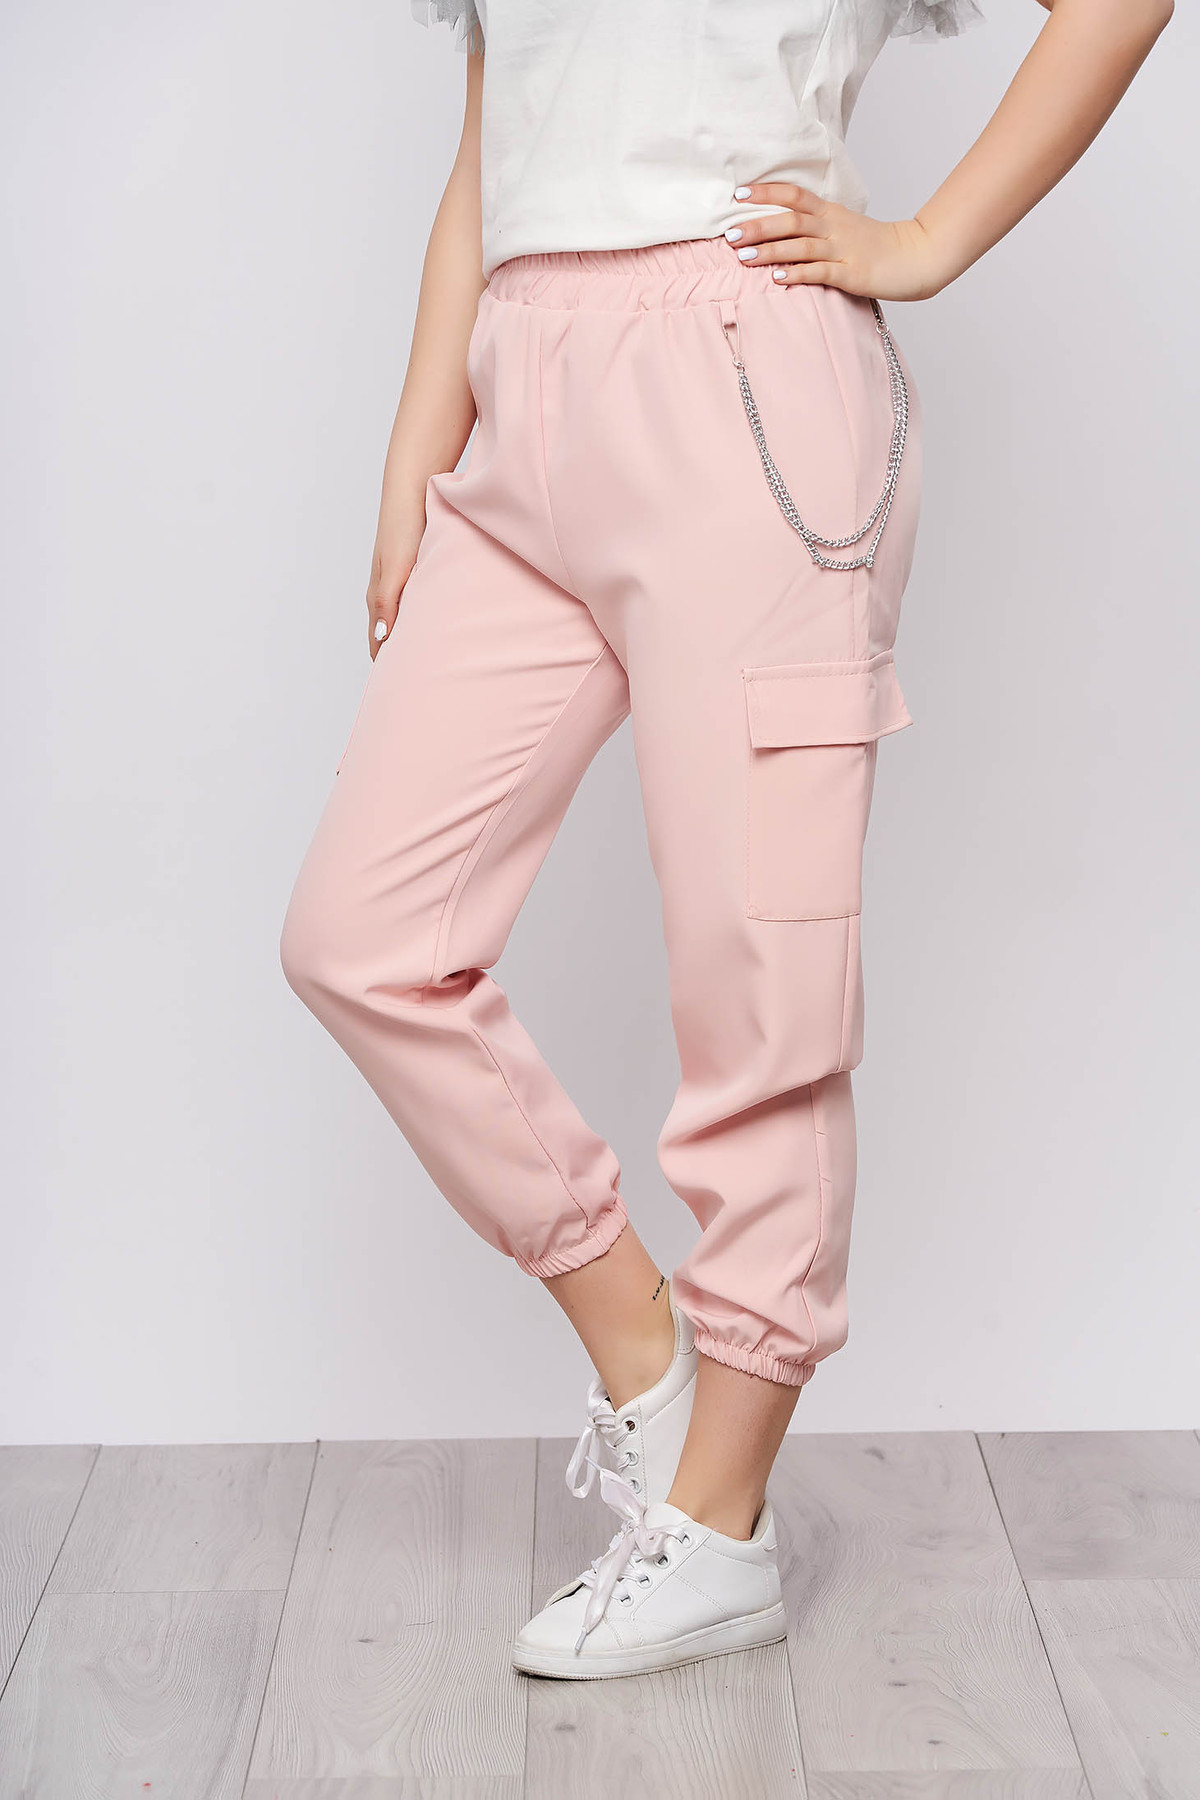 Pantaloni SunShine roz deschis casual 3/4 cu talie inalta buzunare laterale cu accesoriu inclus